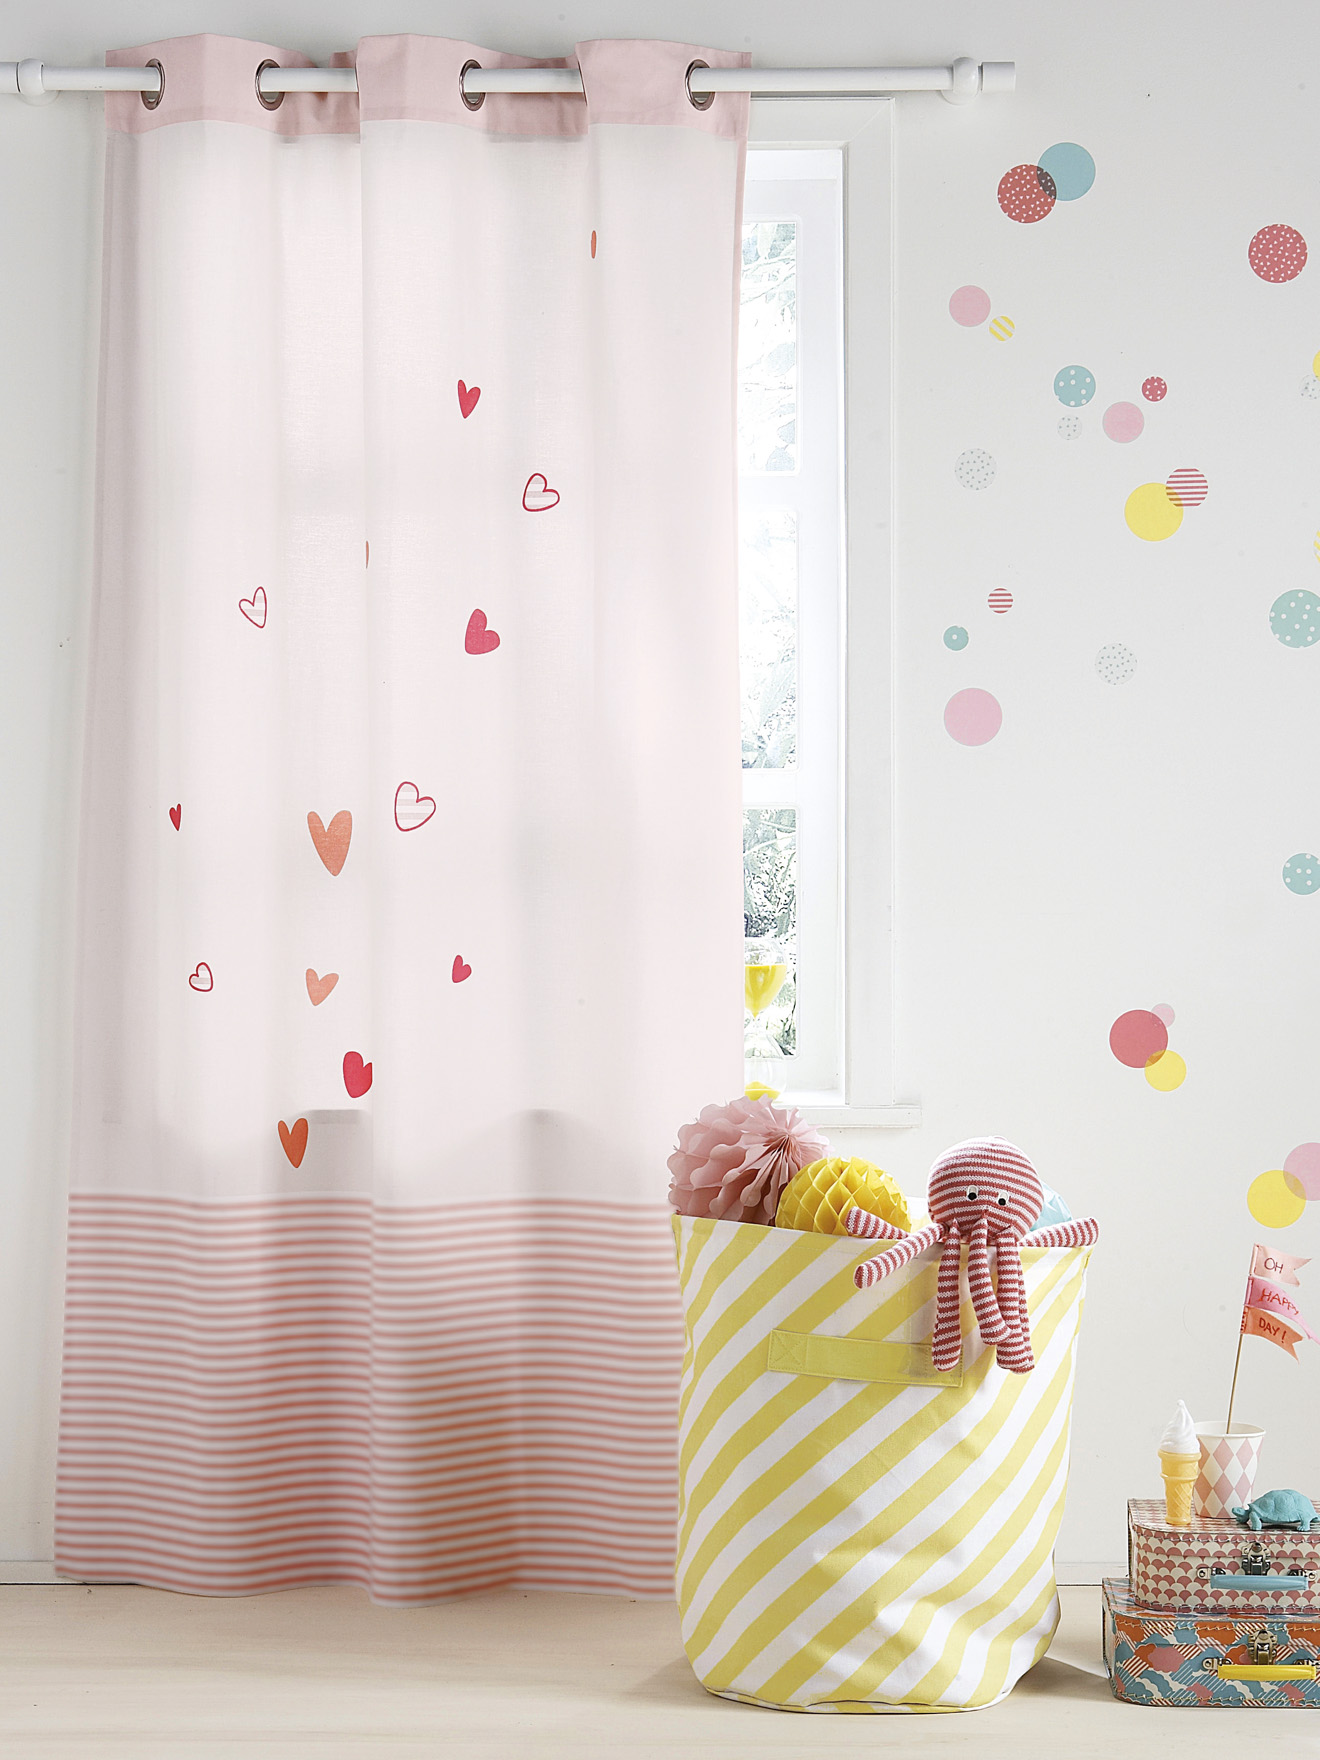 Дизайн штор для детской комнаты с сердечками